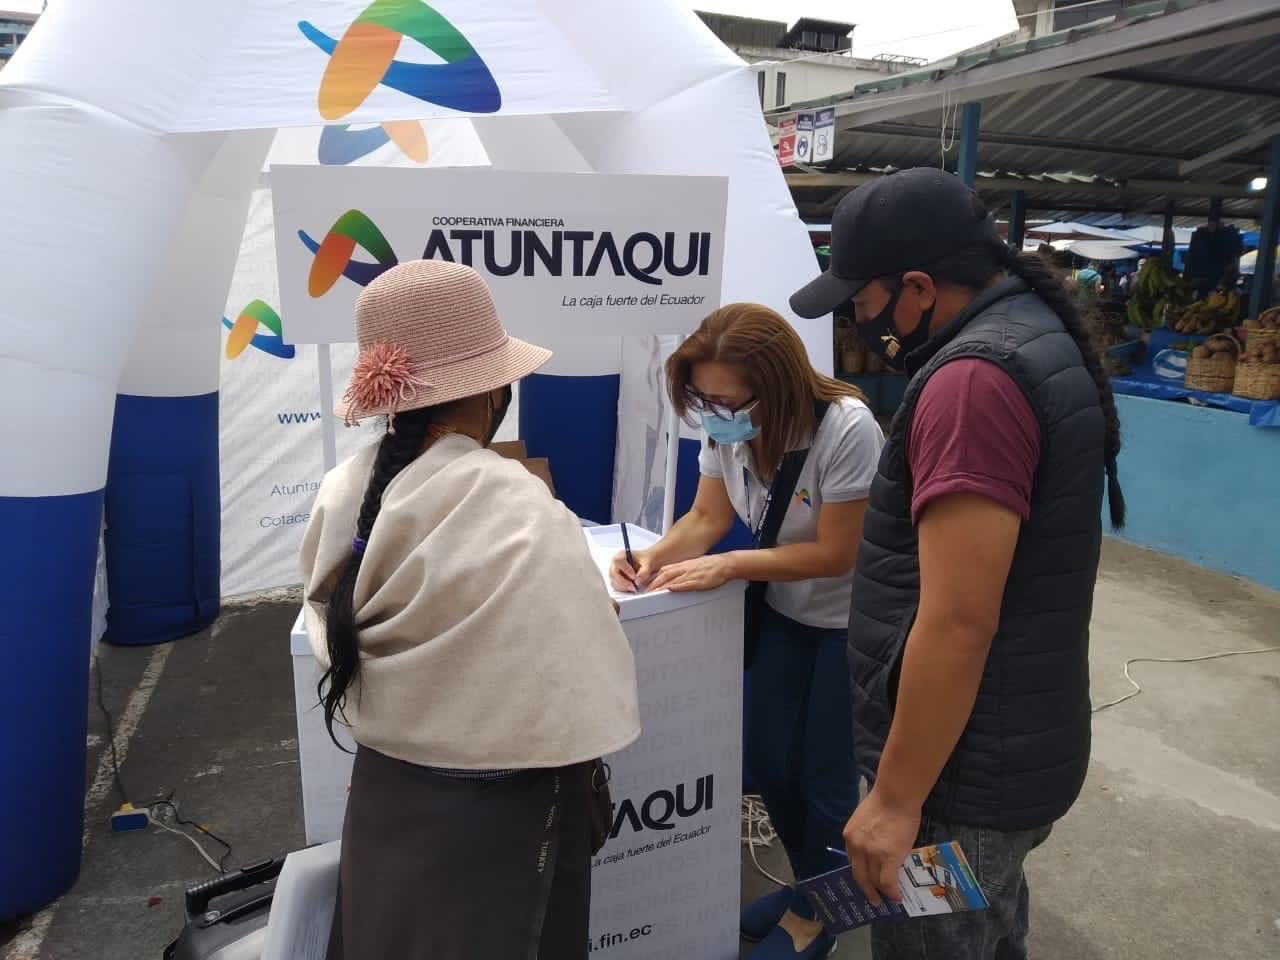 En Atuntaqui nació una de las cooperativas más sólidas del país